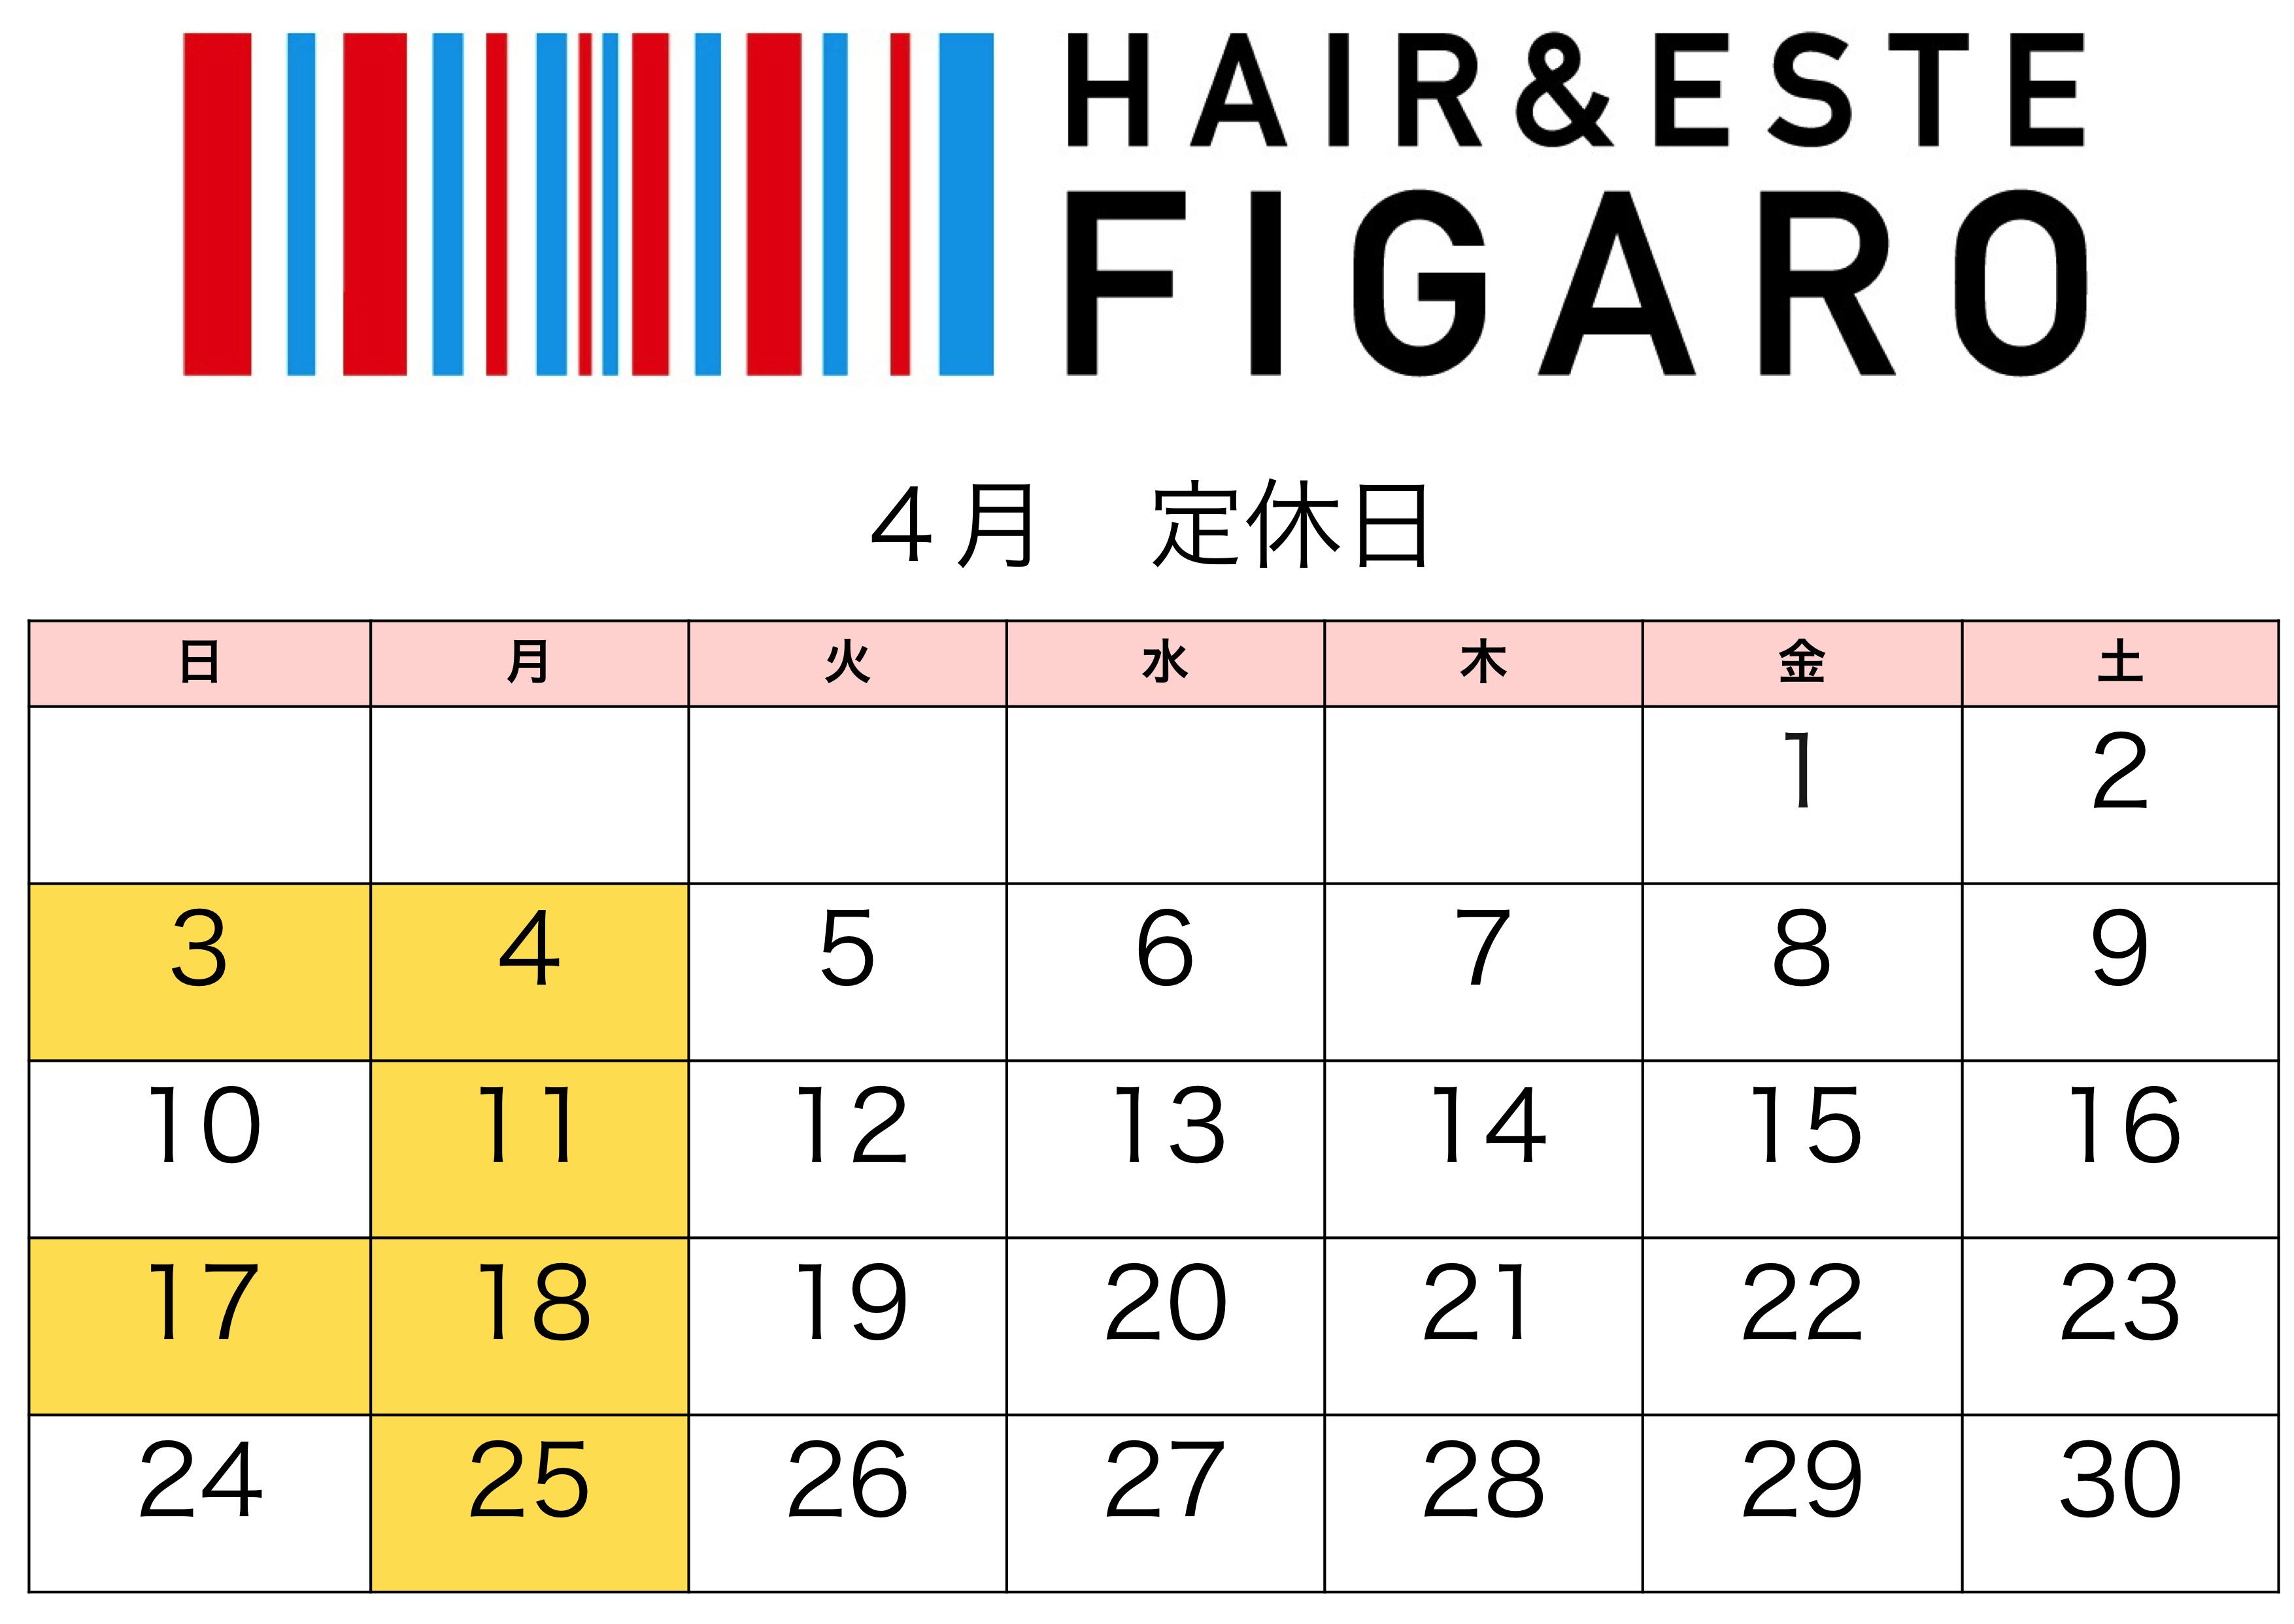 http://figaro-hair.com/blog/%EF%BC%92%EF%BC%90%EF%BC%91%EF%BC%96%E3%80%81%EF%BC%94.jpg